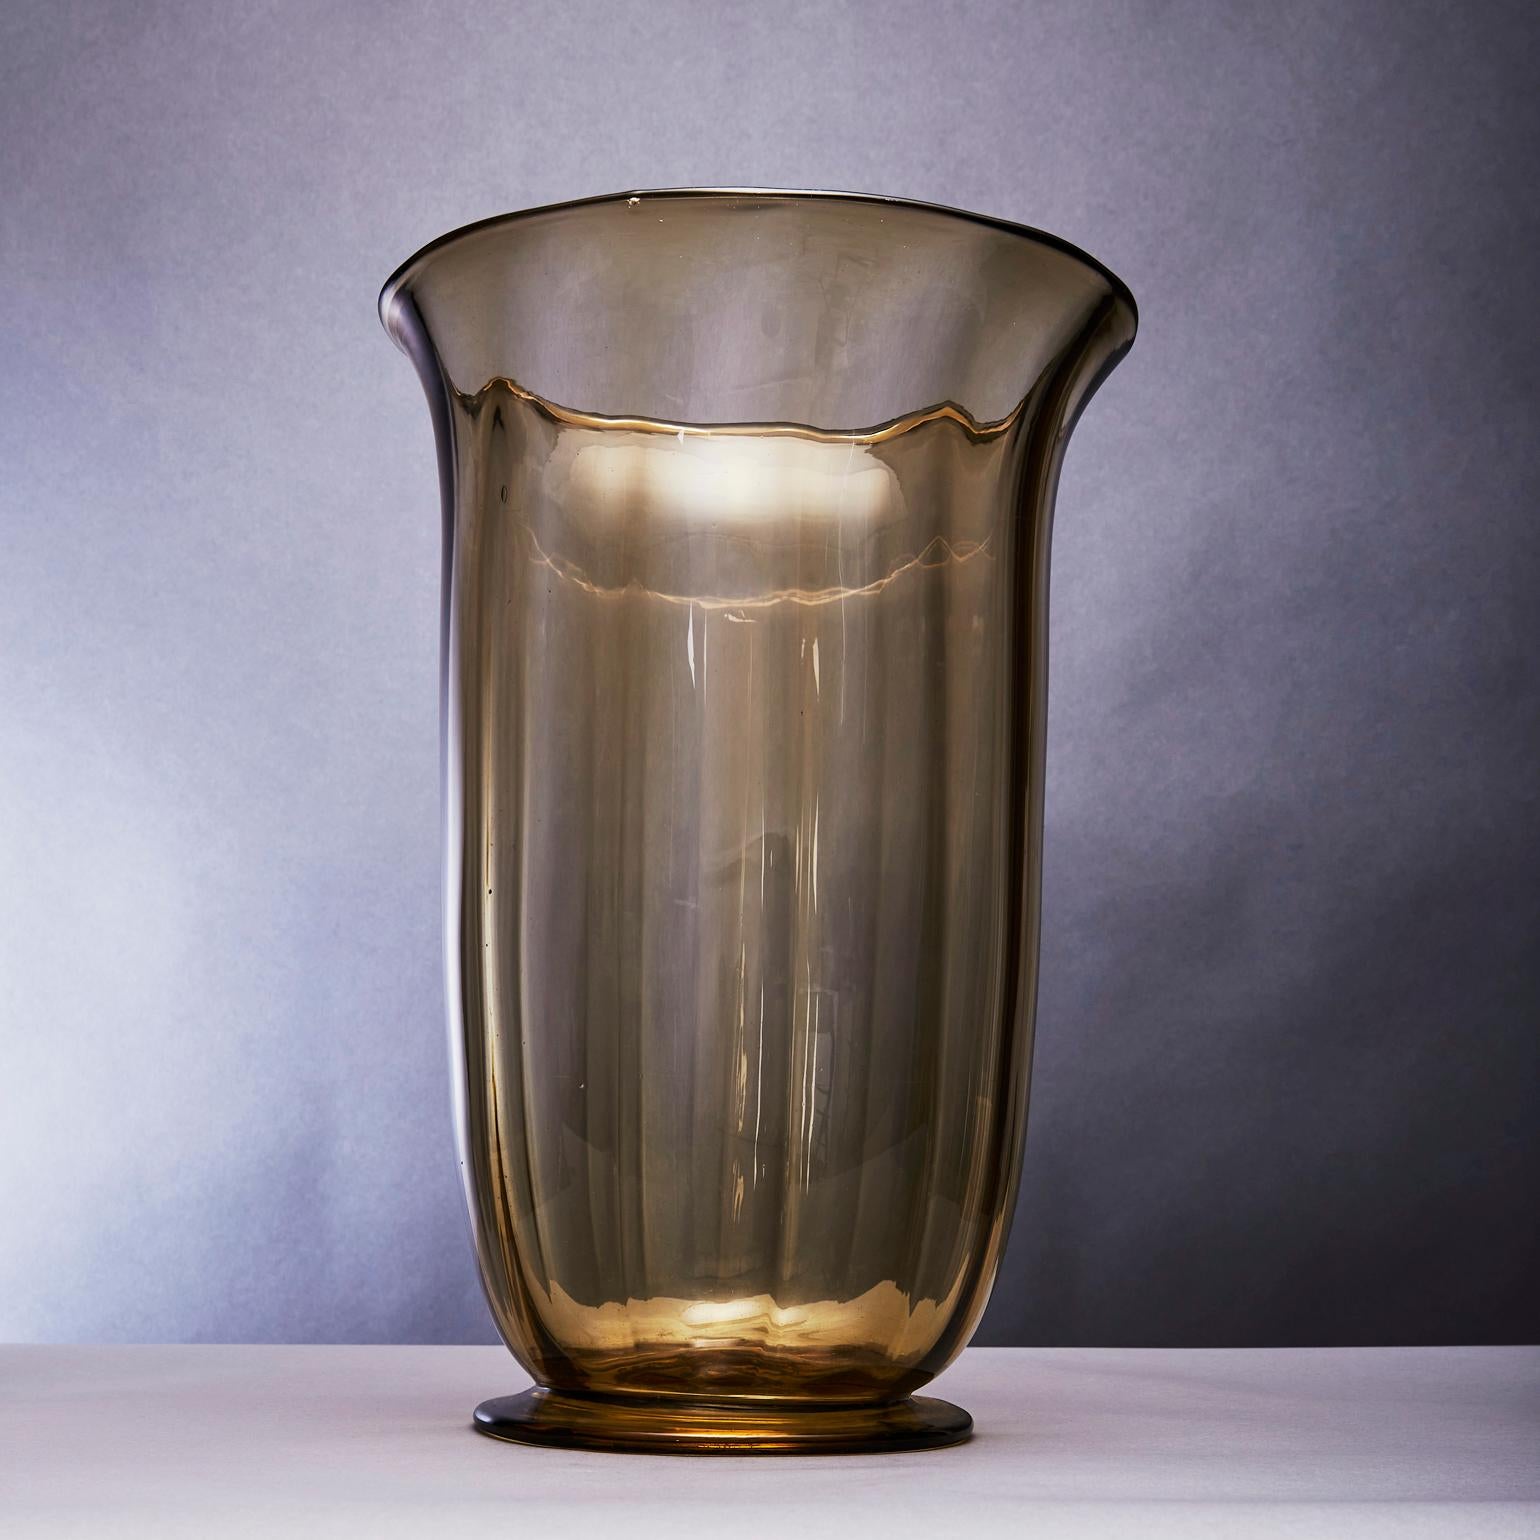 Très grand vase Soffiato modèle 5013. Le verre Soffiato a été créé selon la technique du verre soufflé fin, transparent et unicolore, traduit de près pour révéler une relation directe avec le dessin de Vittorio Zecchin (né en 1878-1947) Murano,